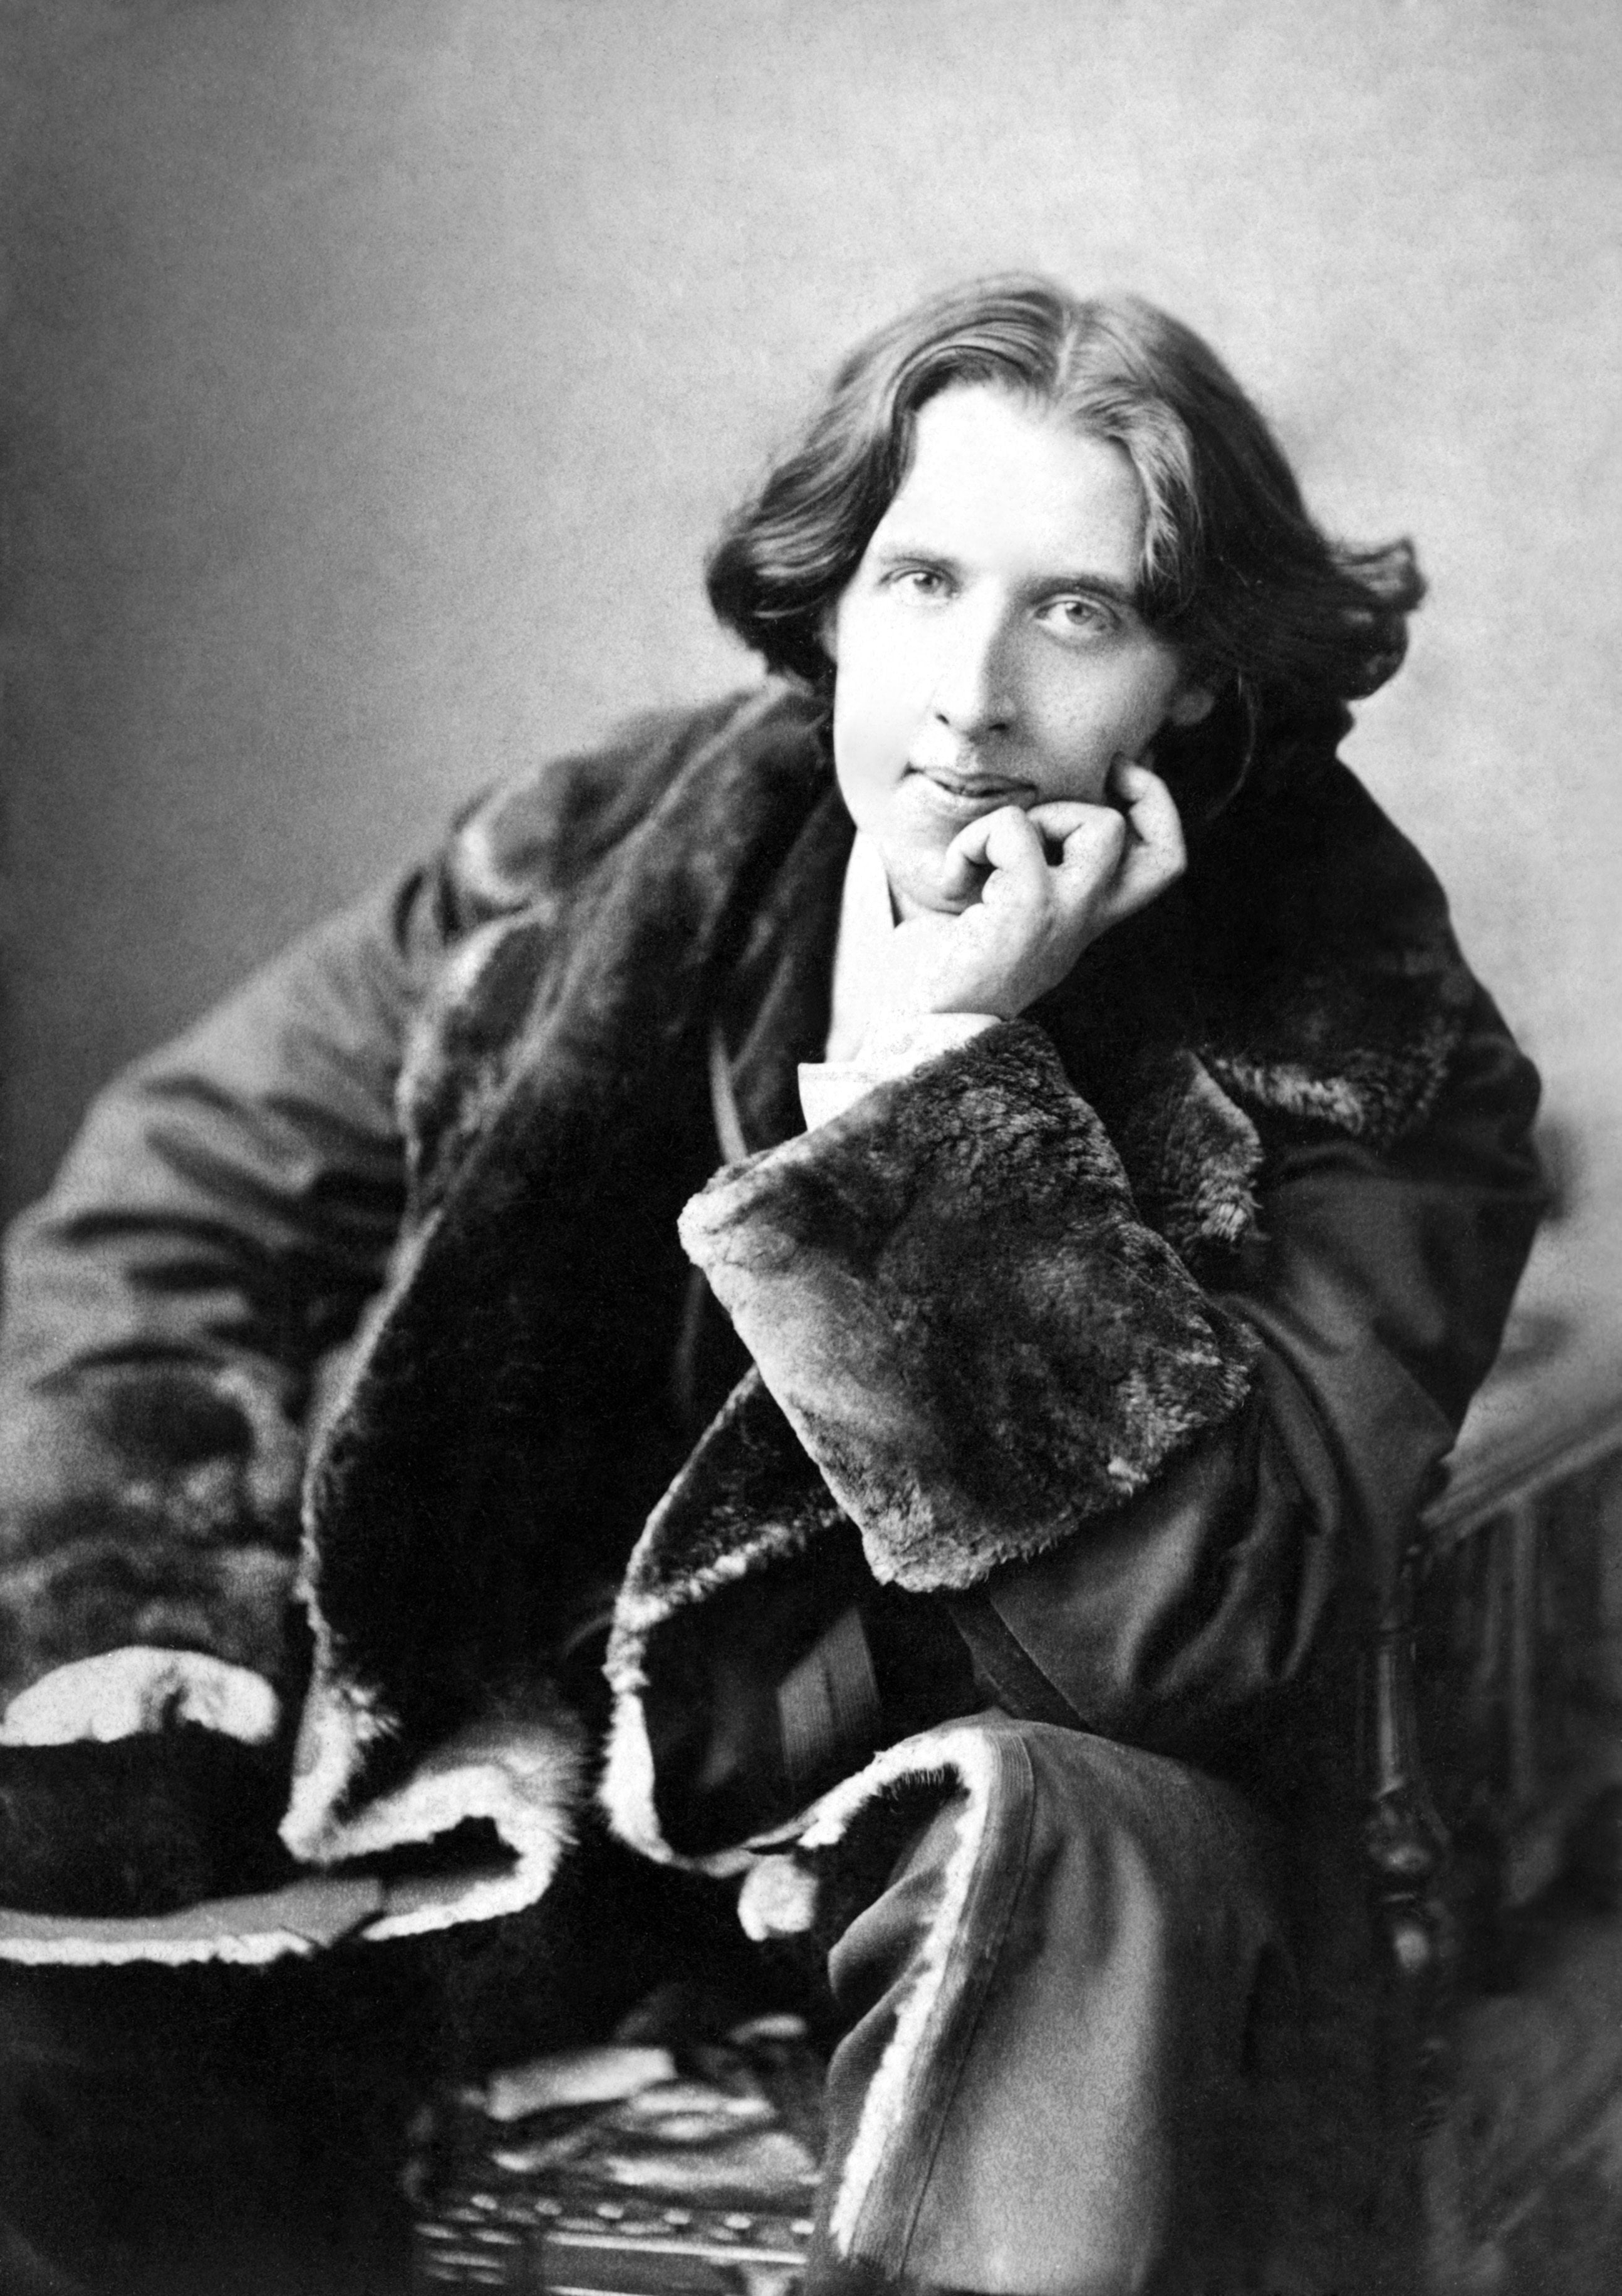 grayscale photo of man in black suit, men, Oscar Wilde, writers, monochrome